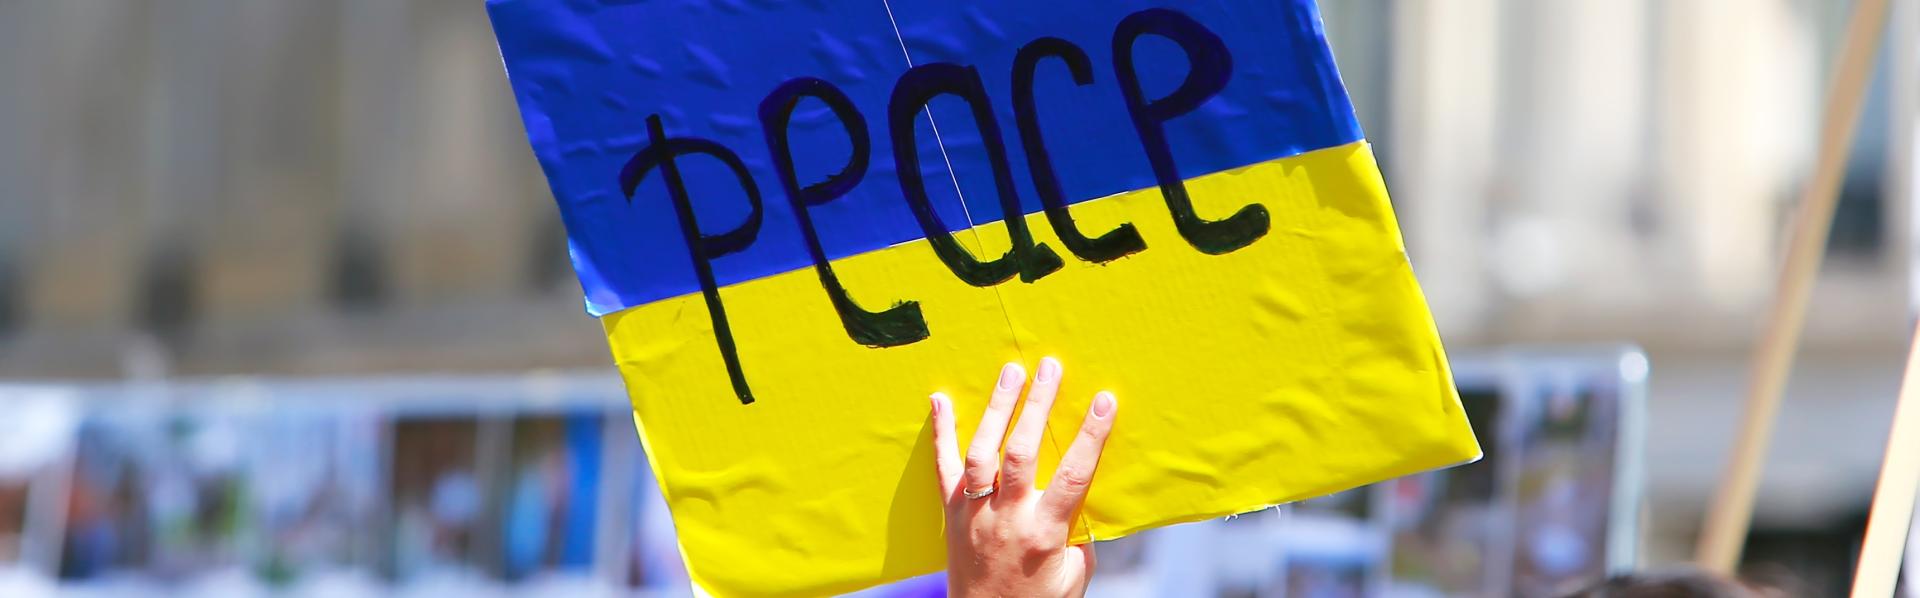 Vrede voor Oekraïne